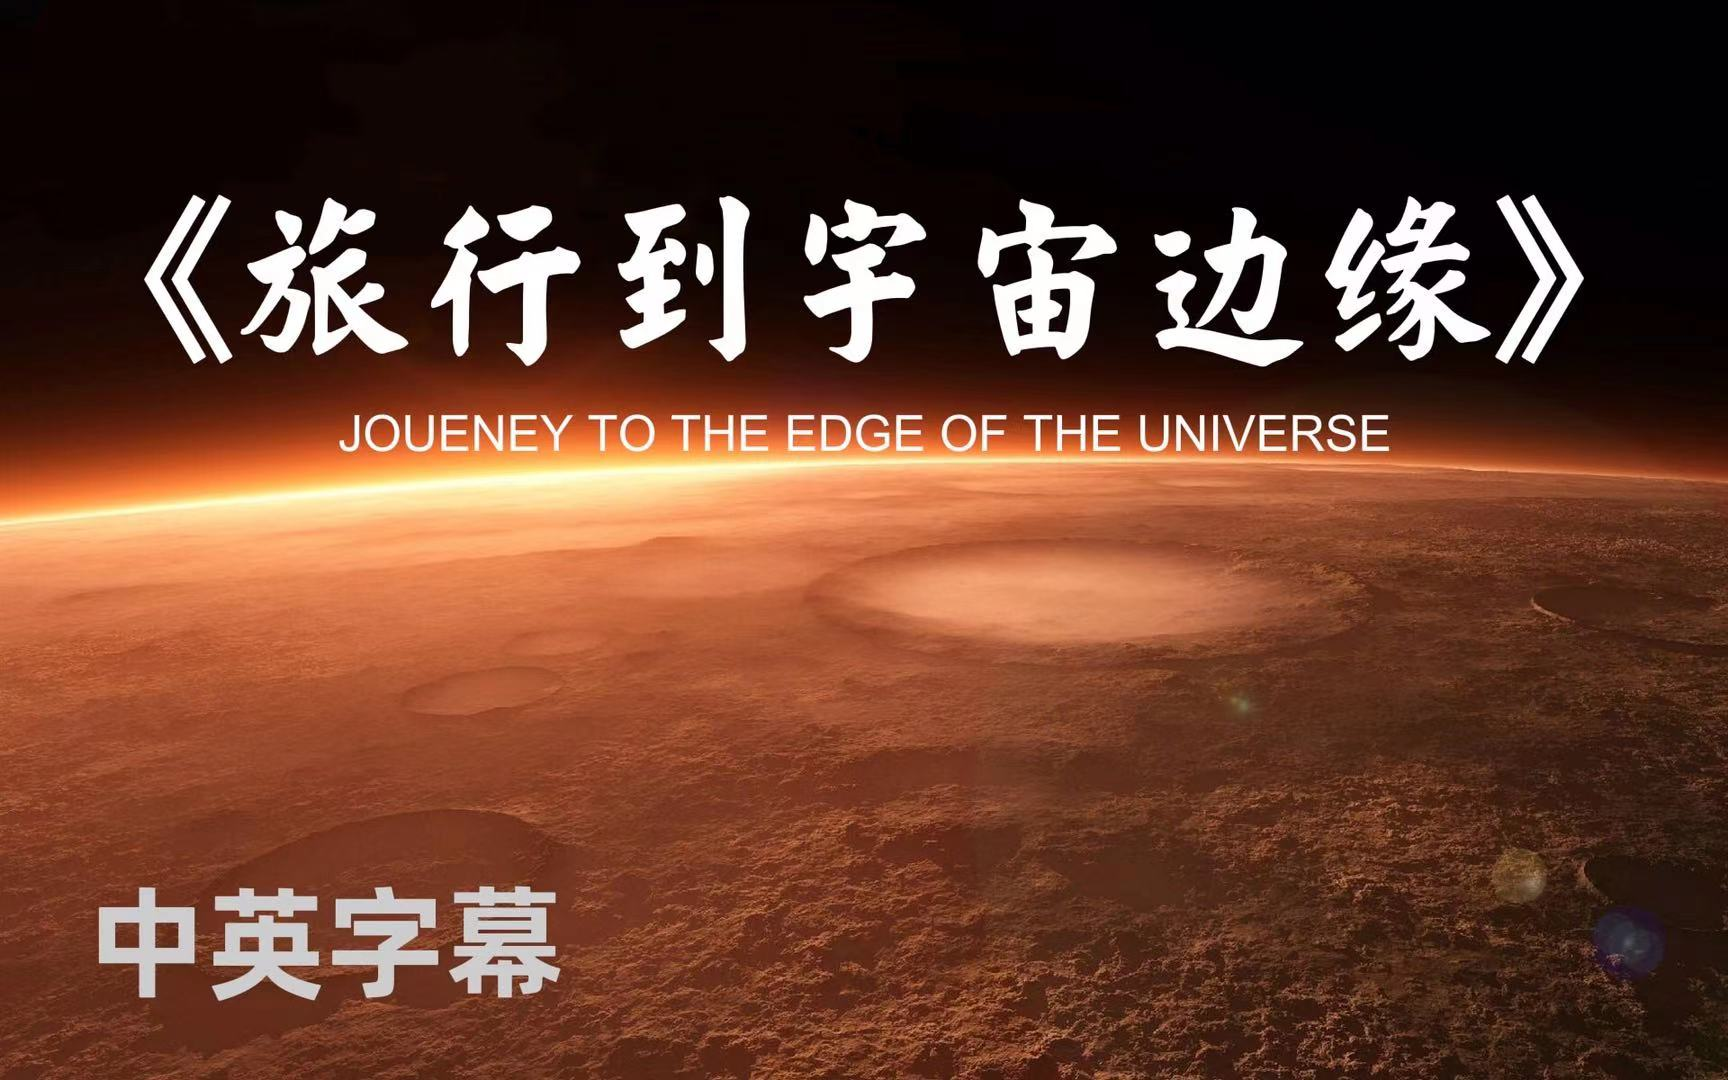 【1080P高分】震撼心灵的绝佳纪录片《旅行到宇宙边缘》中英字幕